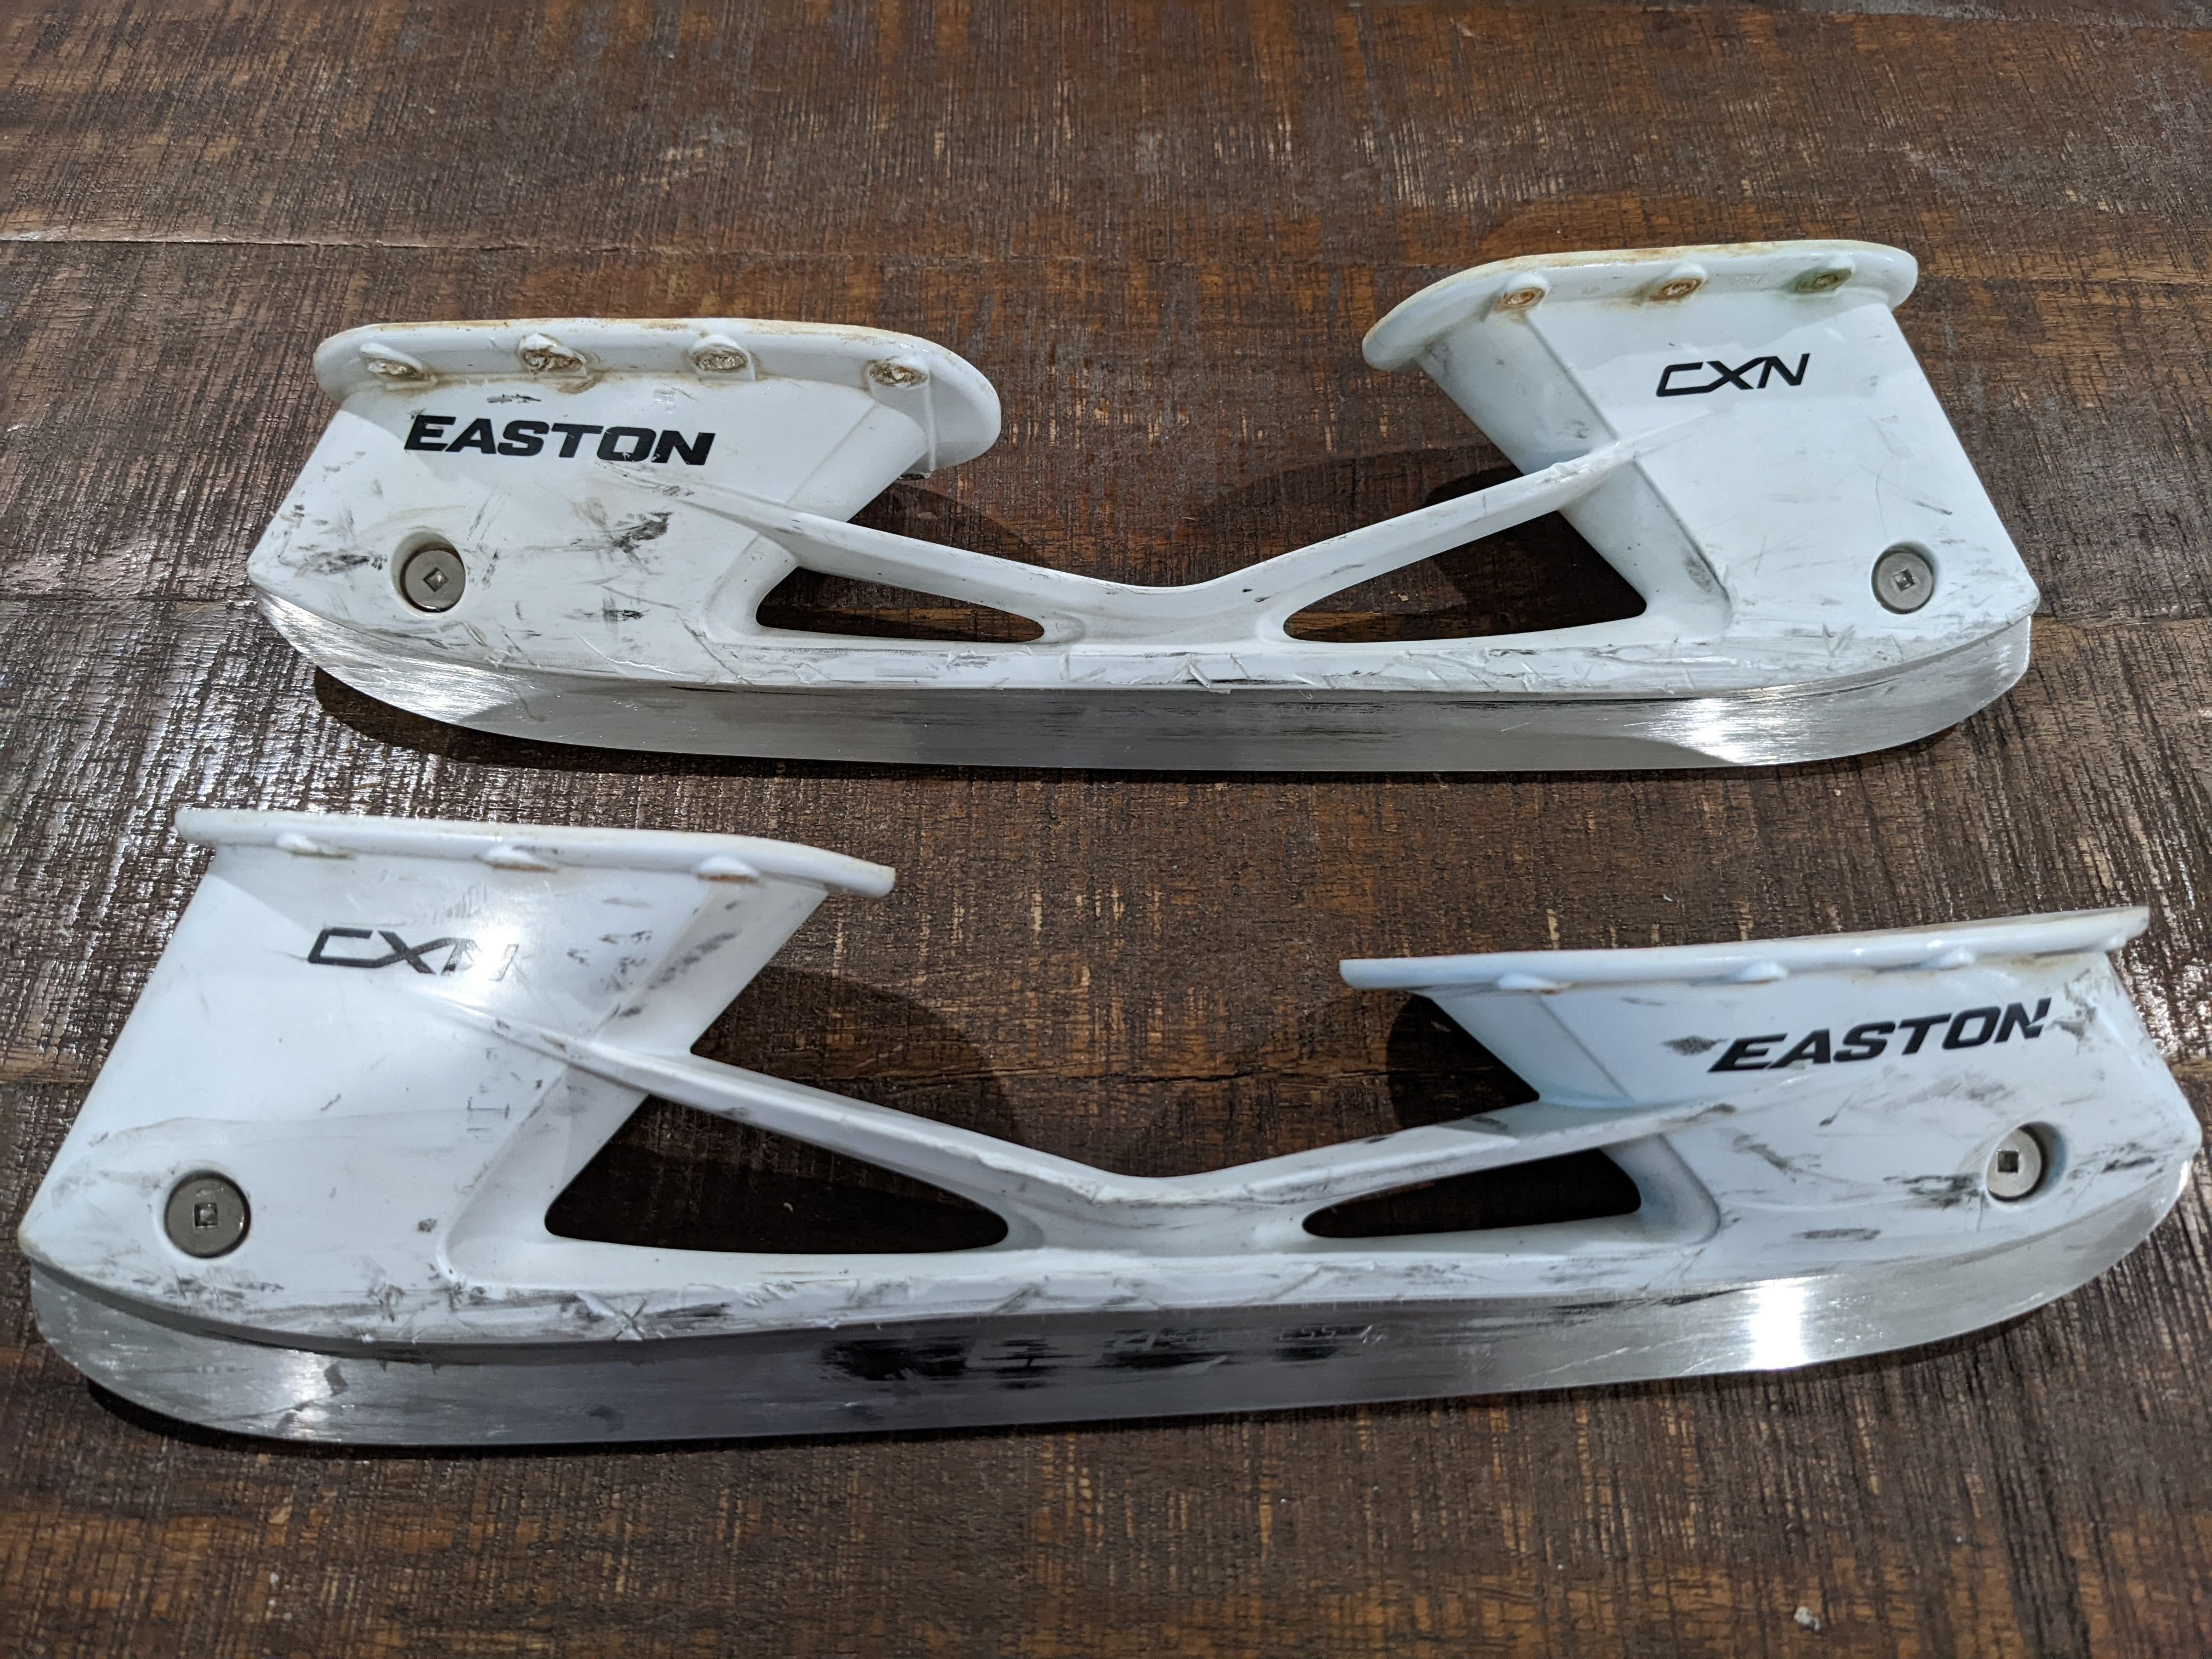 Easton Stainless Steel Runner Blade Set Senior Size 07 